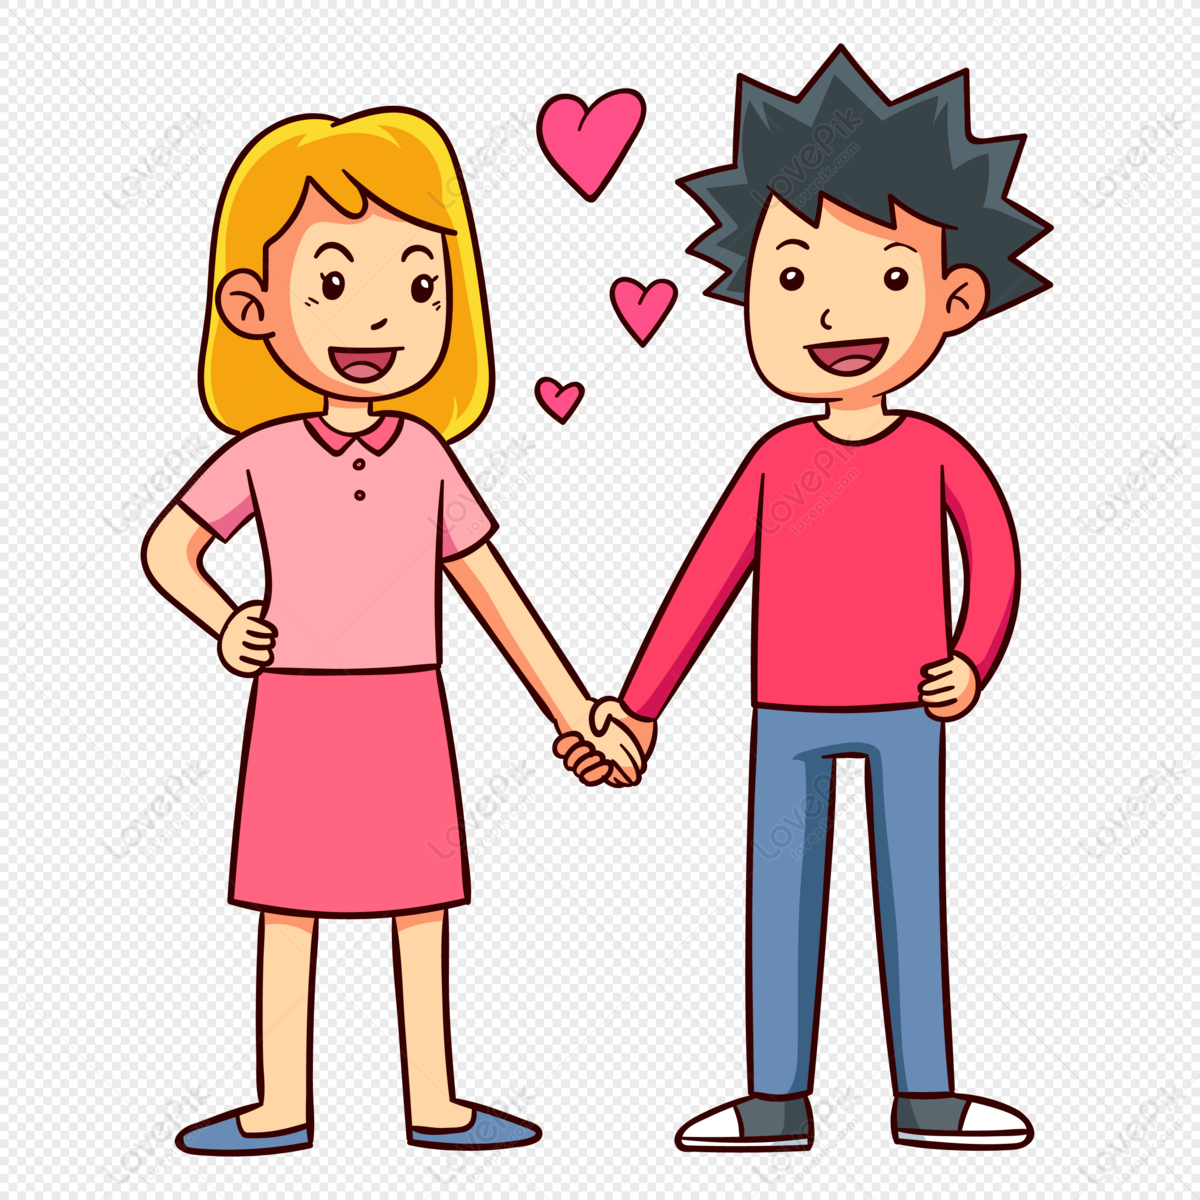 Nắm Tay Nhau Hẹn Hò: Chỉ cần nhìn vào bức hình những cặp đôi tay trong tay đi dạo, bạn sẽ cảm nhận được tình yêu chân thành và lãng mạn trong không khí. Hãy cùng xem để tìm đến niềm hạnh phúc trong tình yêu.